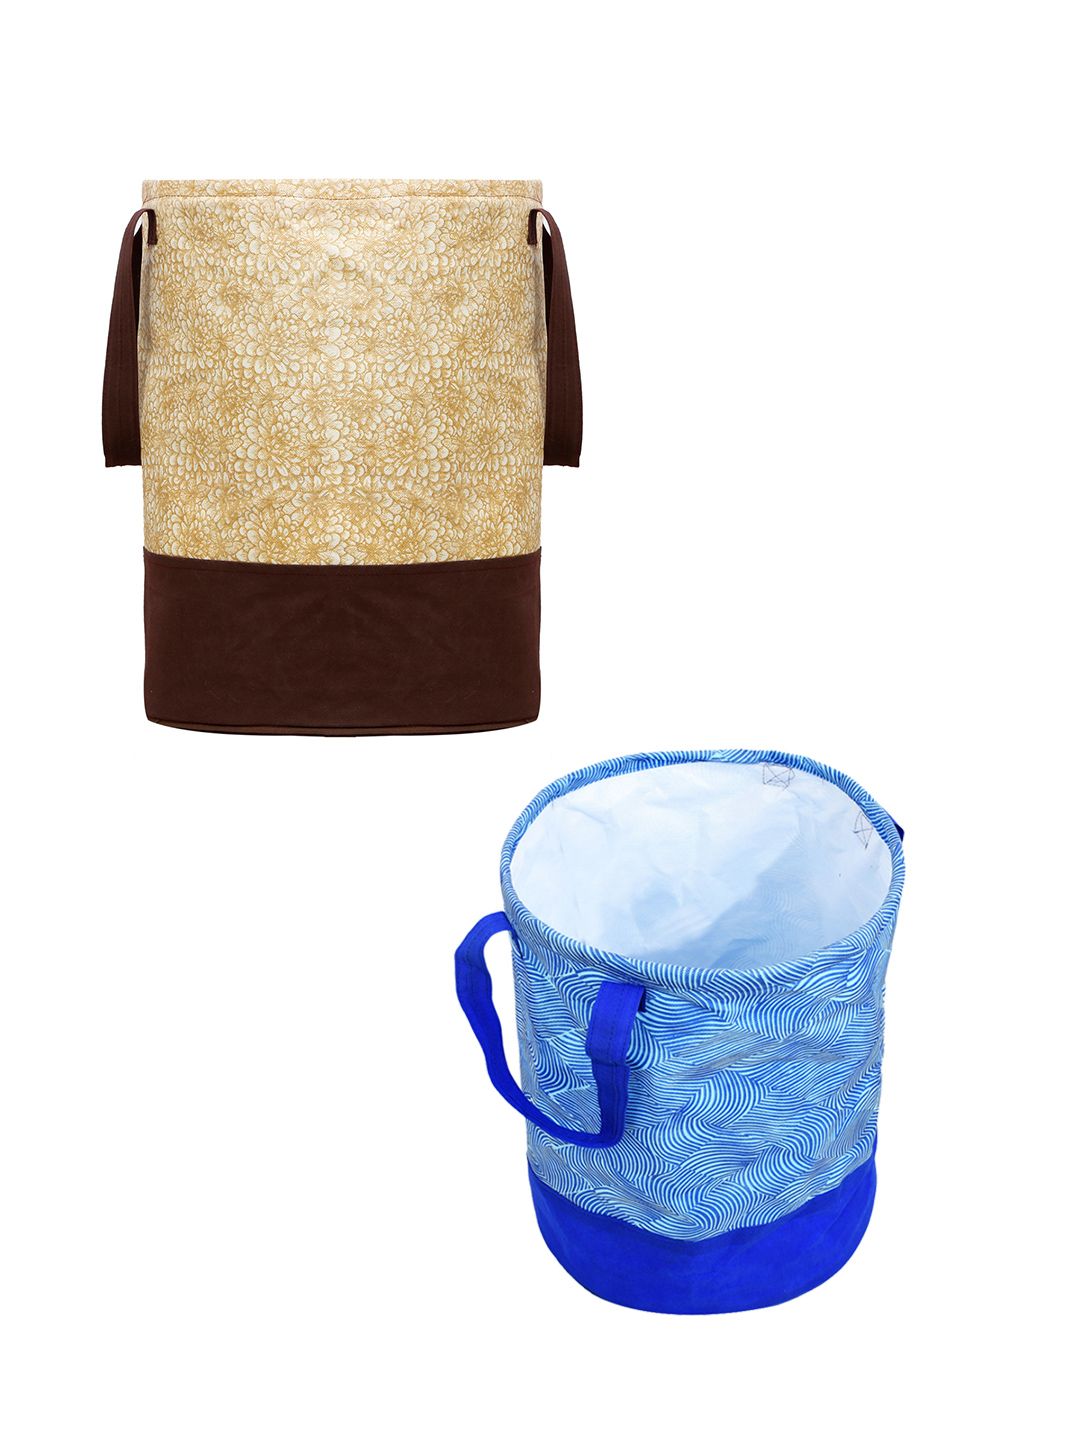 Kuber Industries Set Of 2 Beige & Blue Printed Waterproof Canvas Laundry Bags Price in India